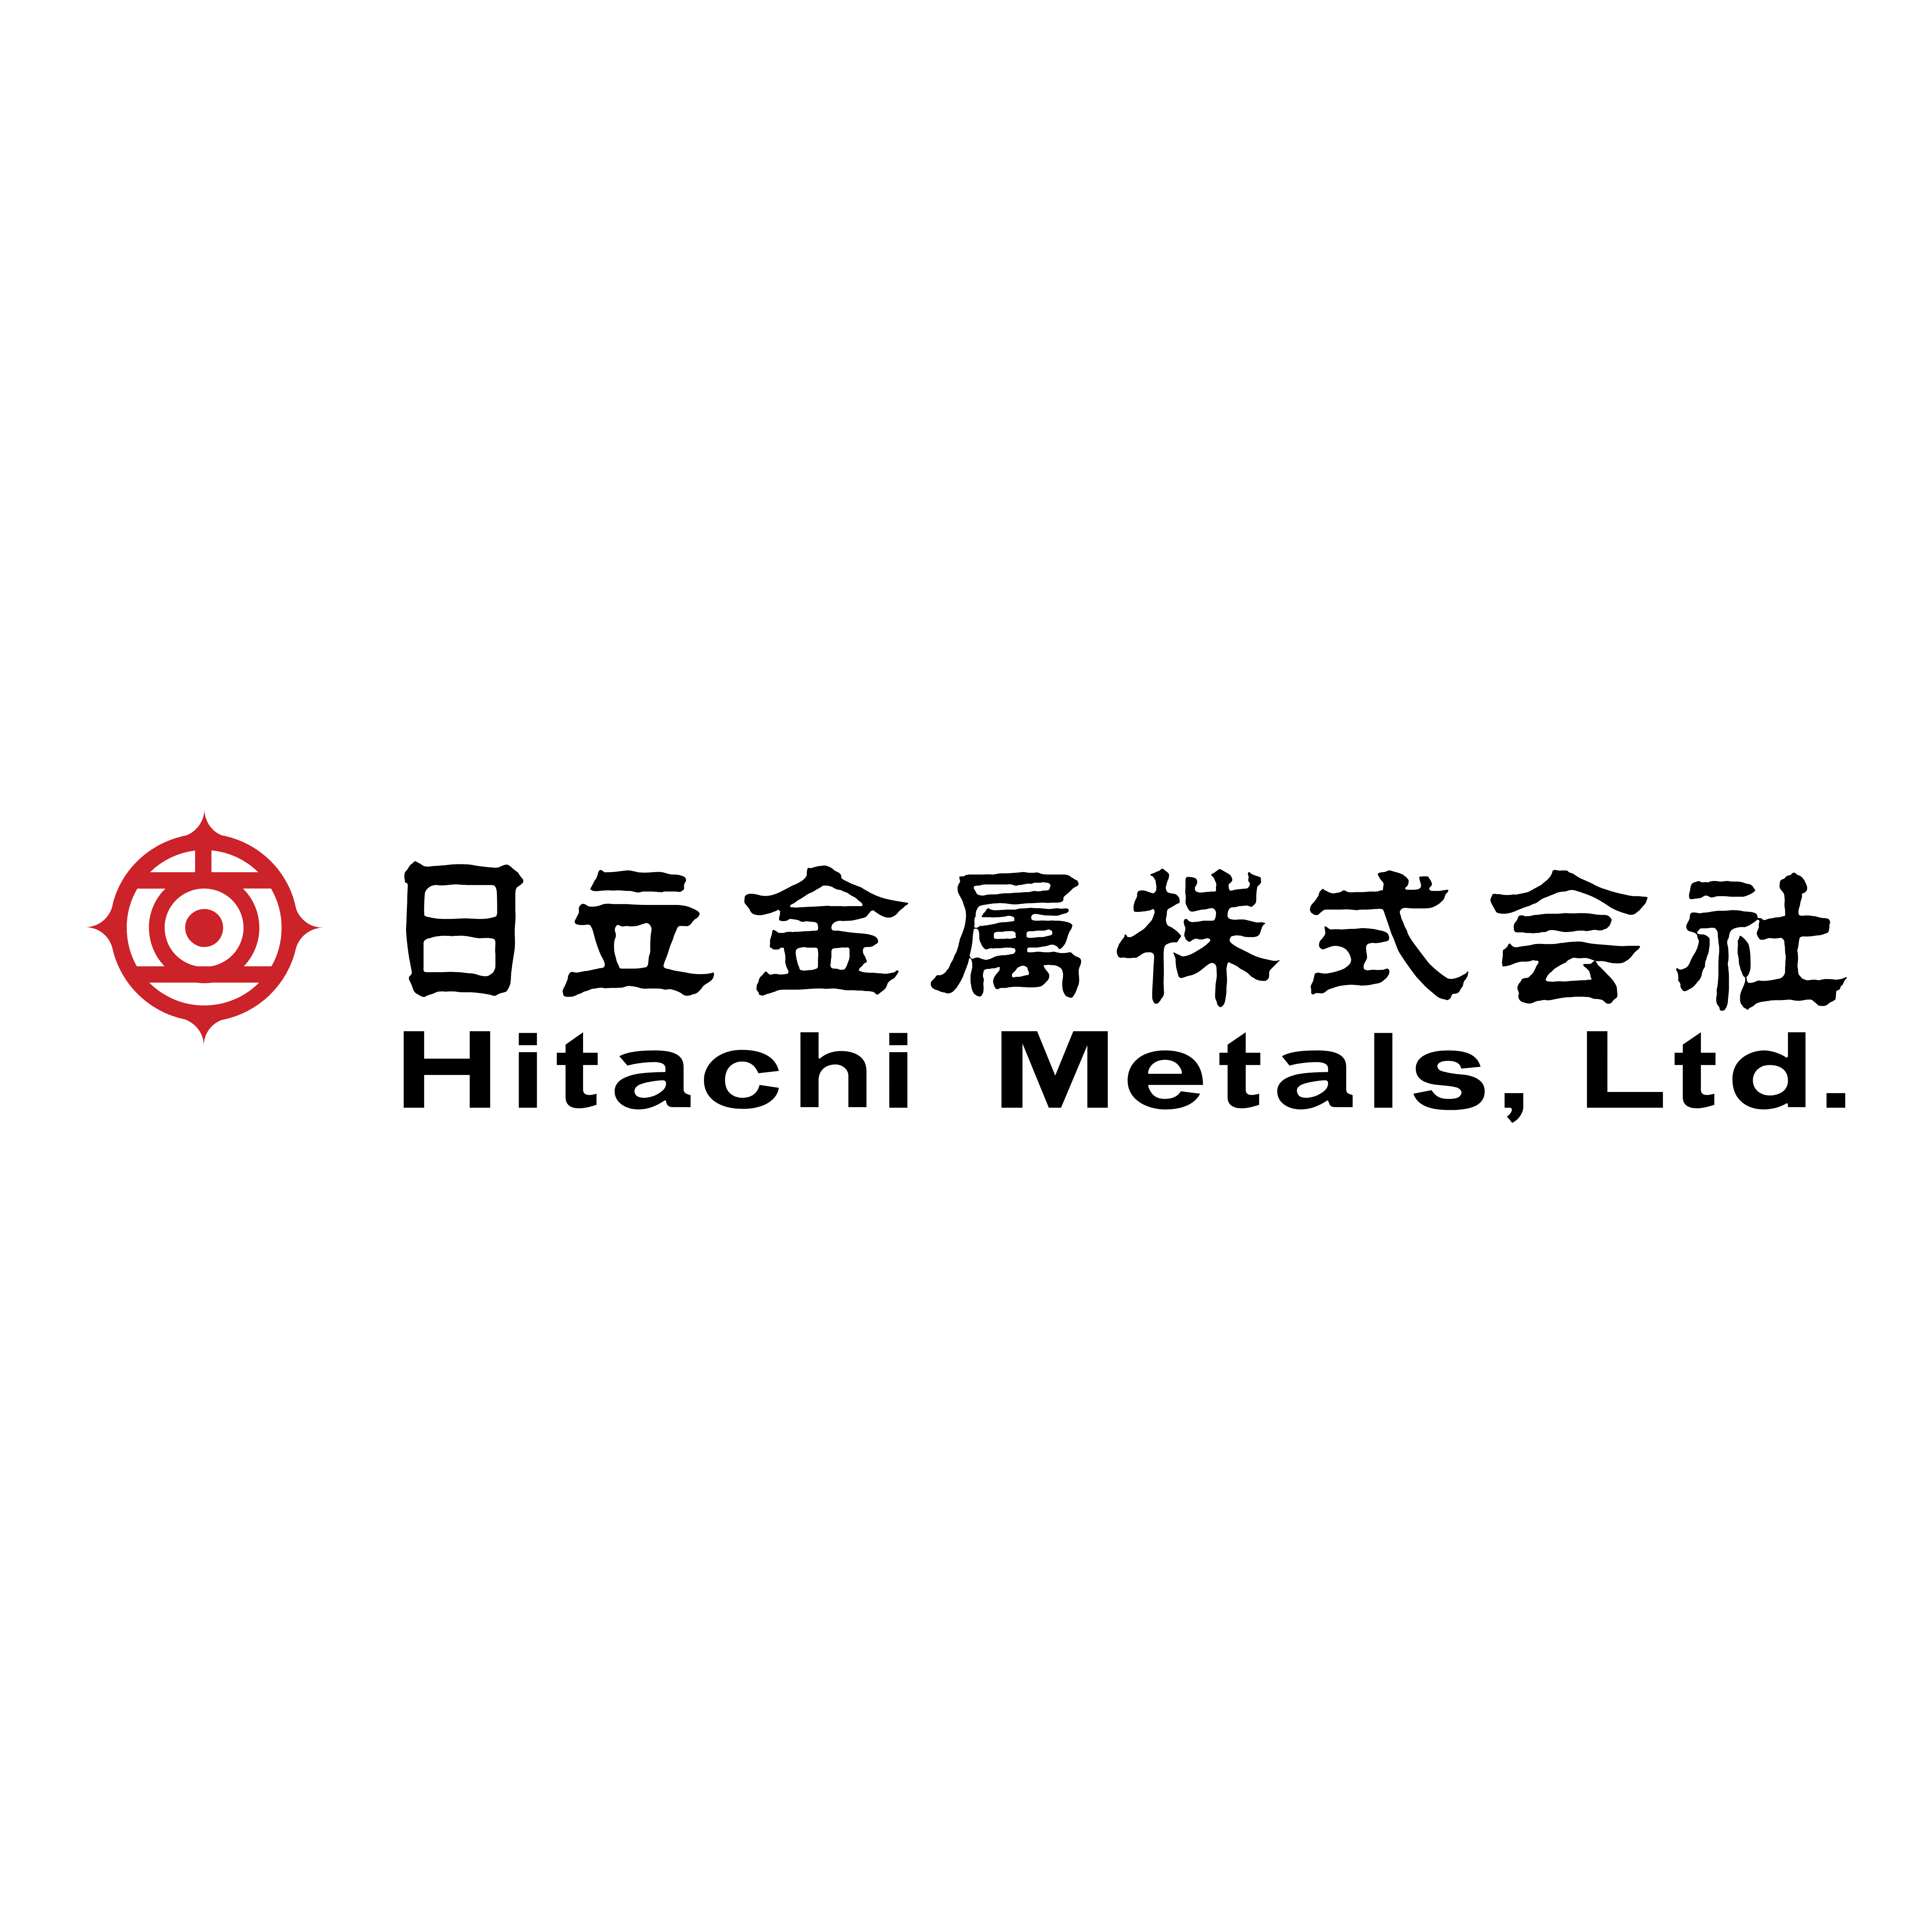 Fiat Hitachi Logo Png Transpa